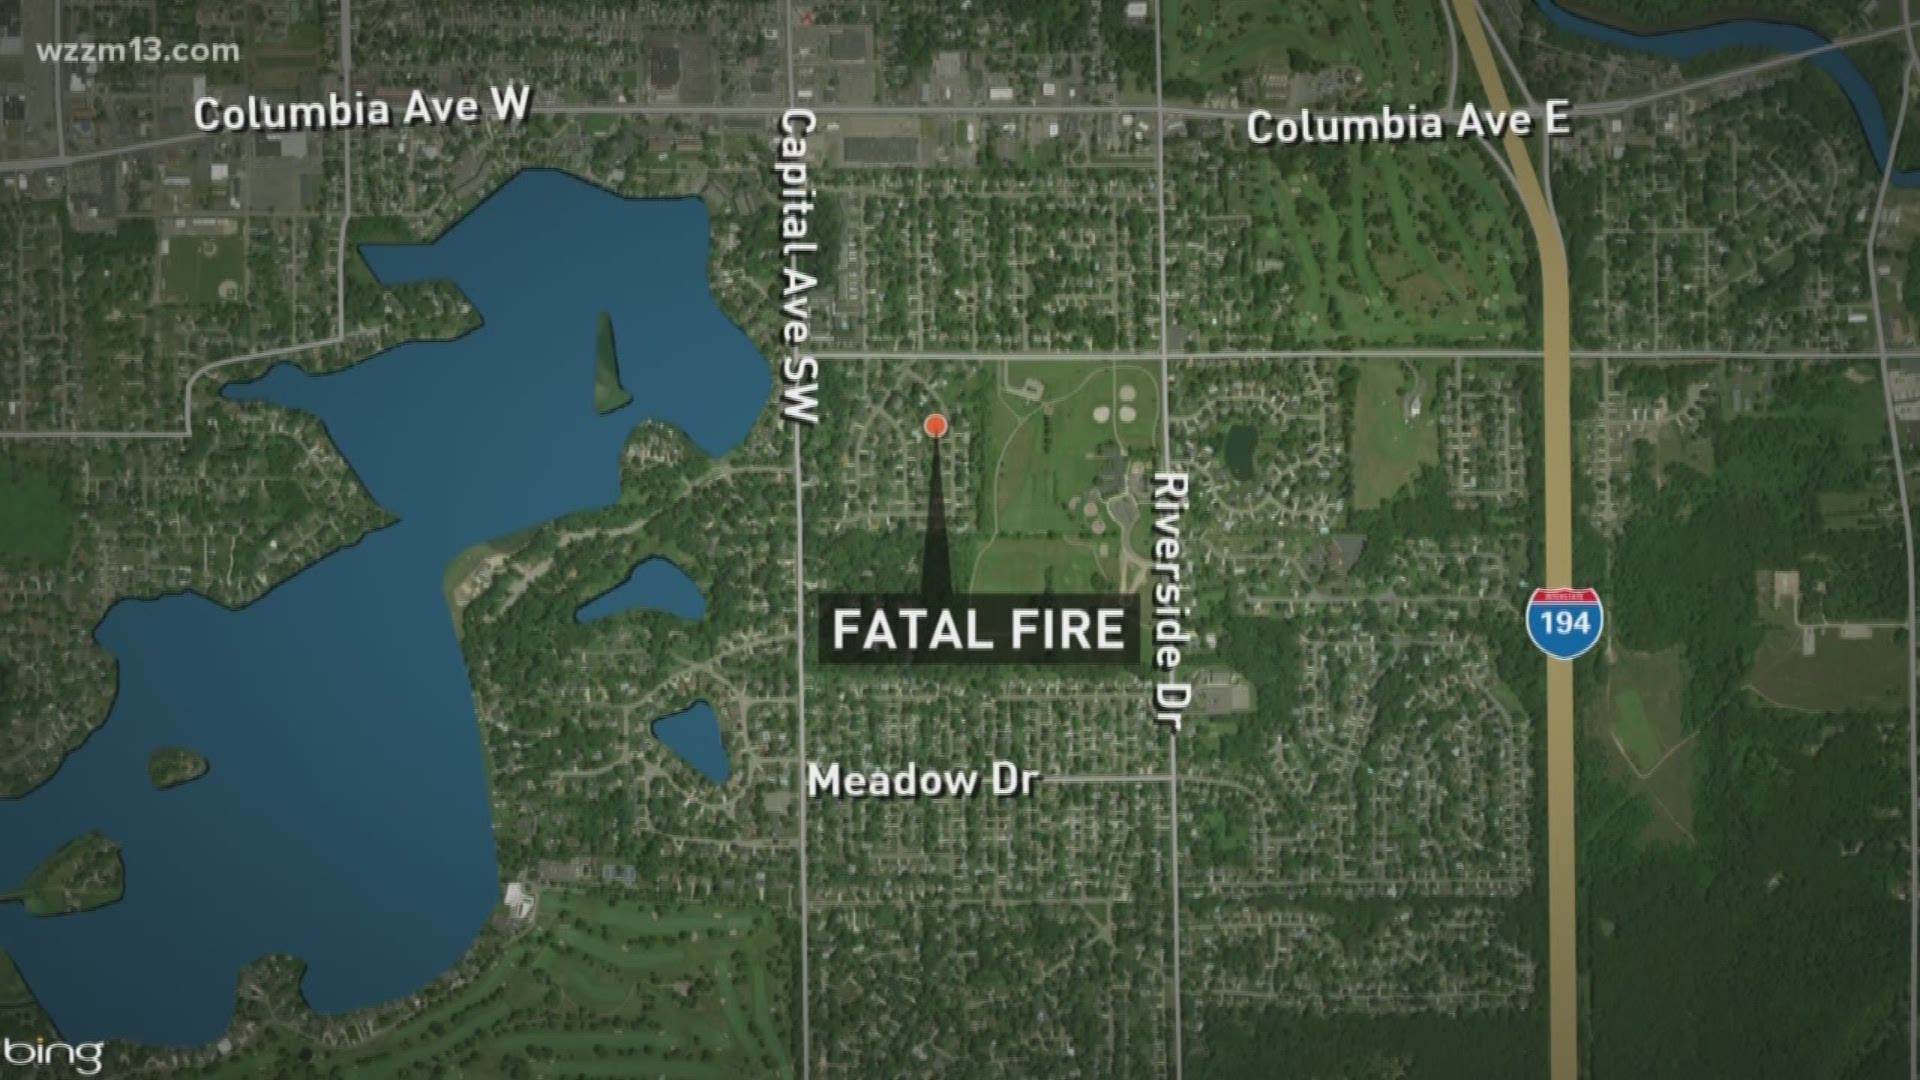 House fire in Battle Creek leaves 1 dead